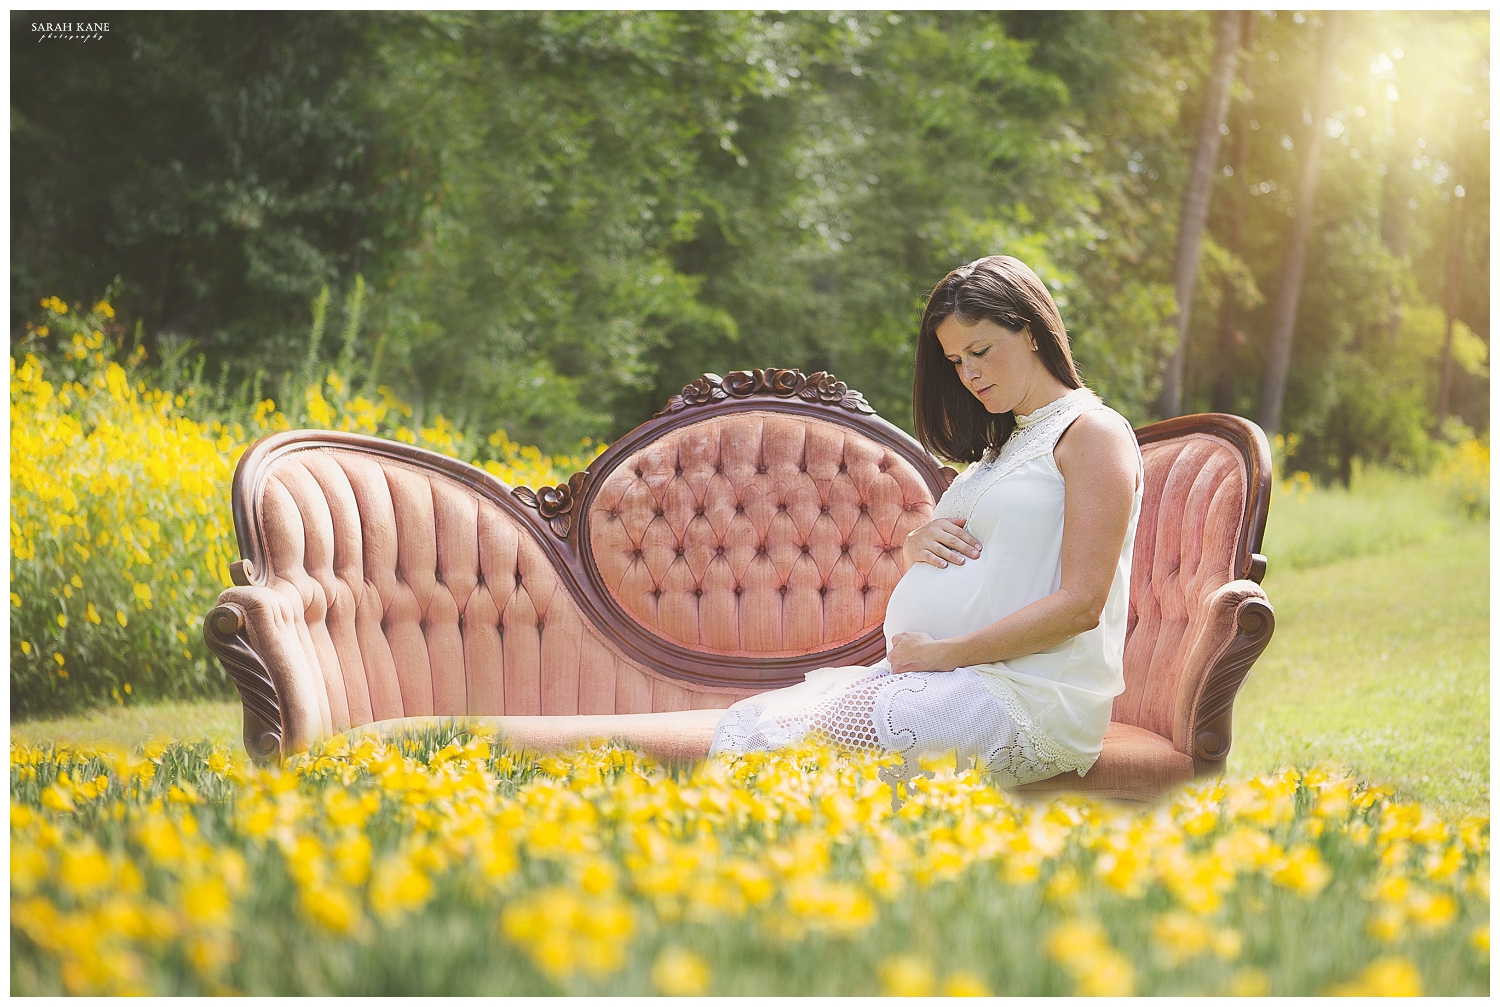 Kristin Maternity - Sarah Kane Photography061a.jpg